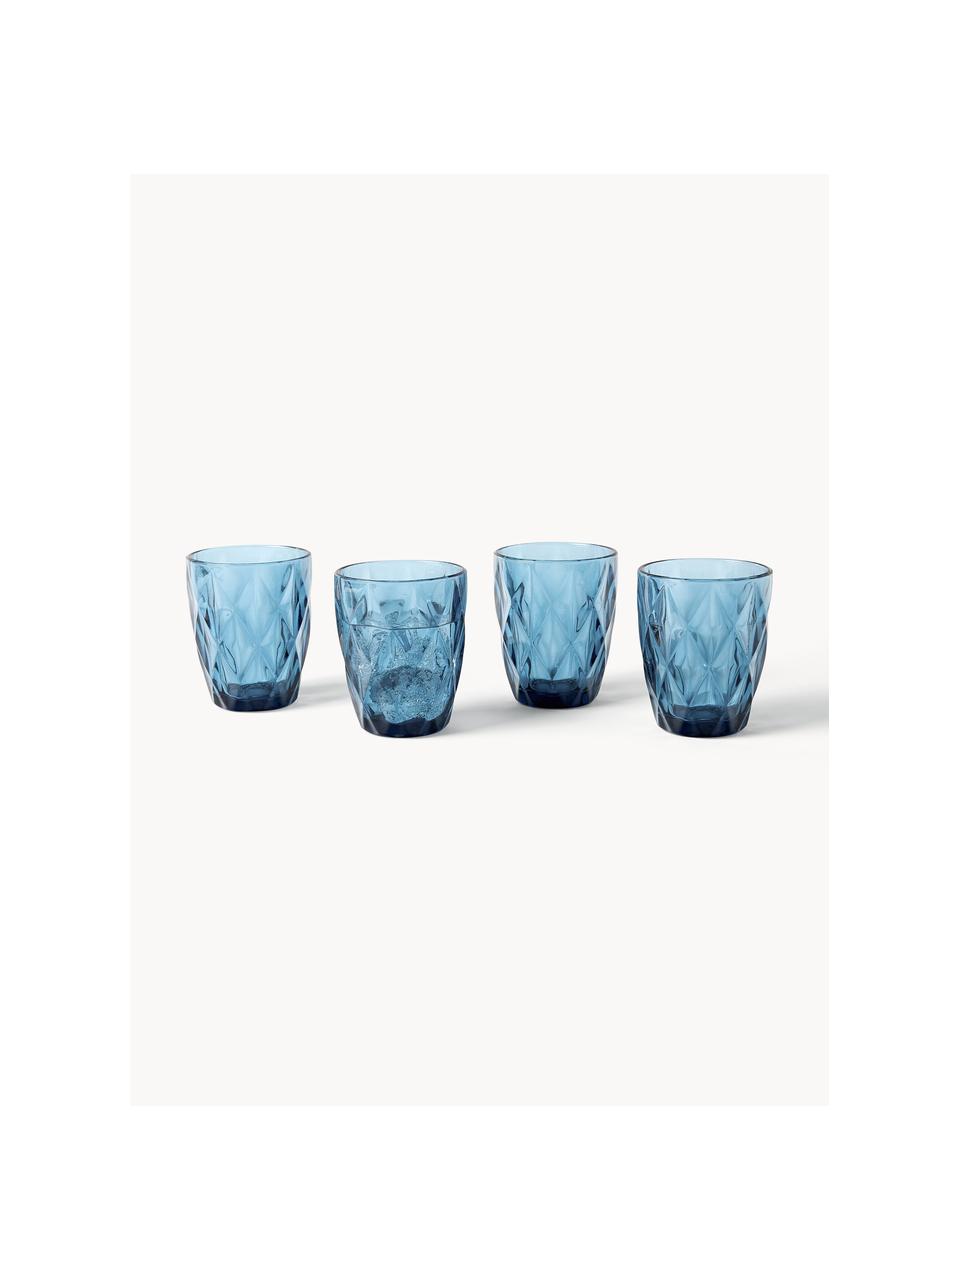 Waterglazen Colorado met structuurpatroon, 4 stuks, Glas, Blauw, Ø 8 x H 10 cm, 260 ml